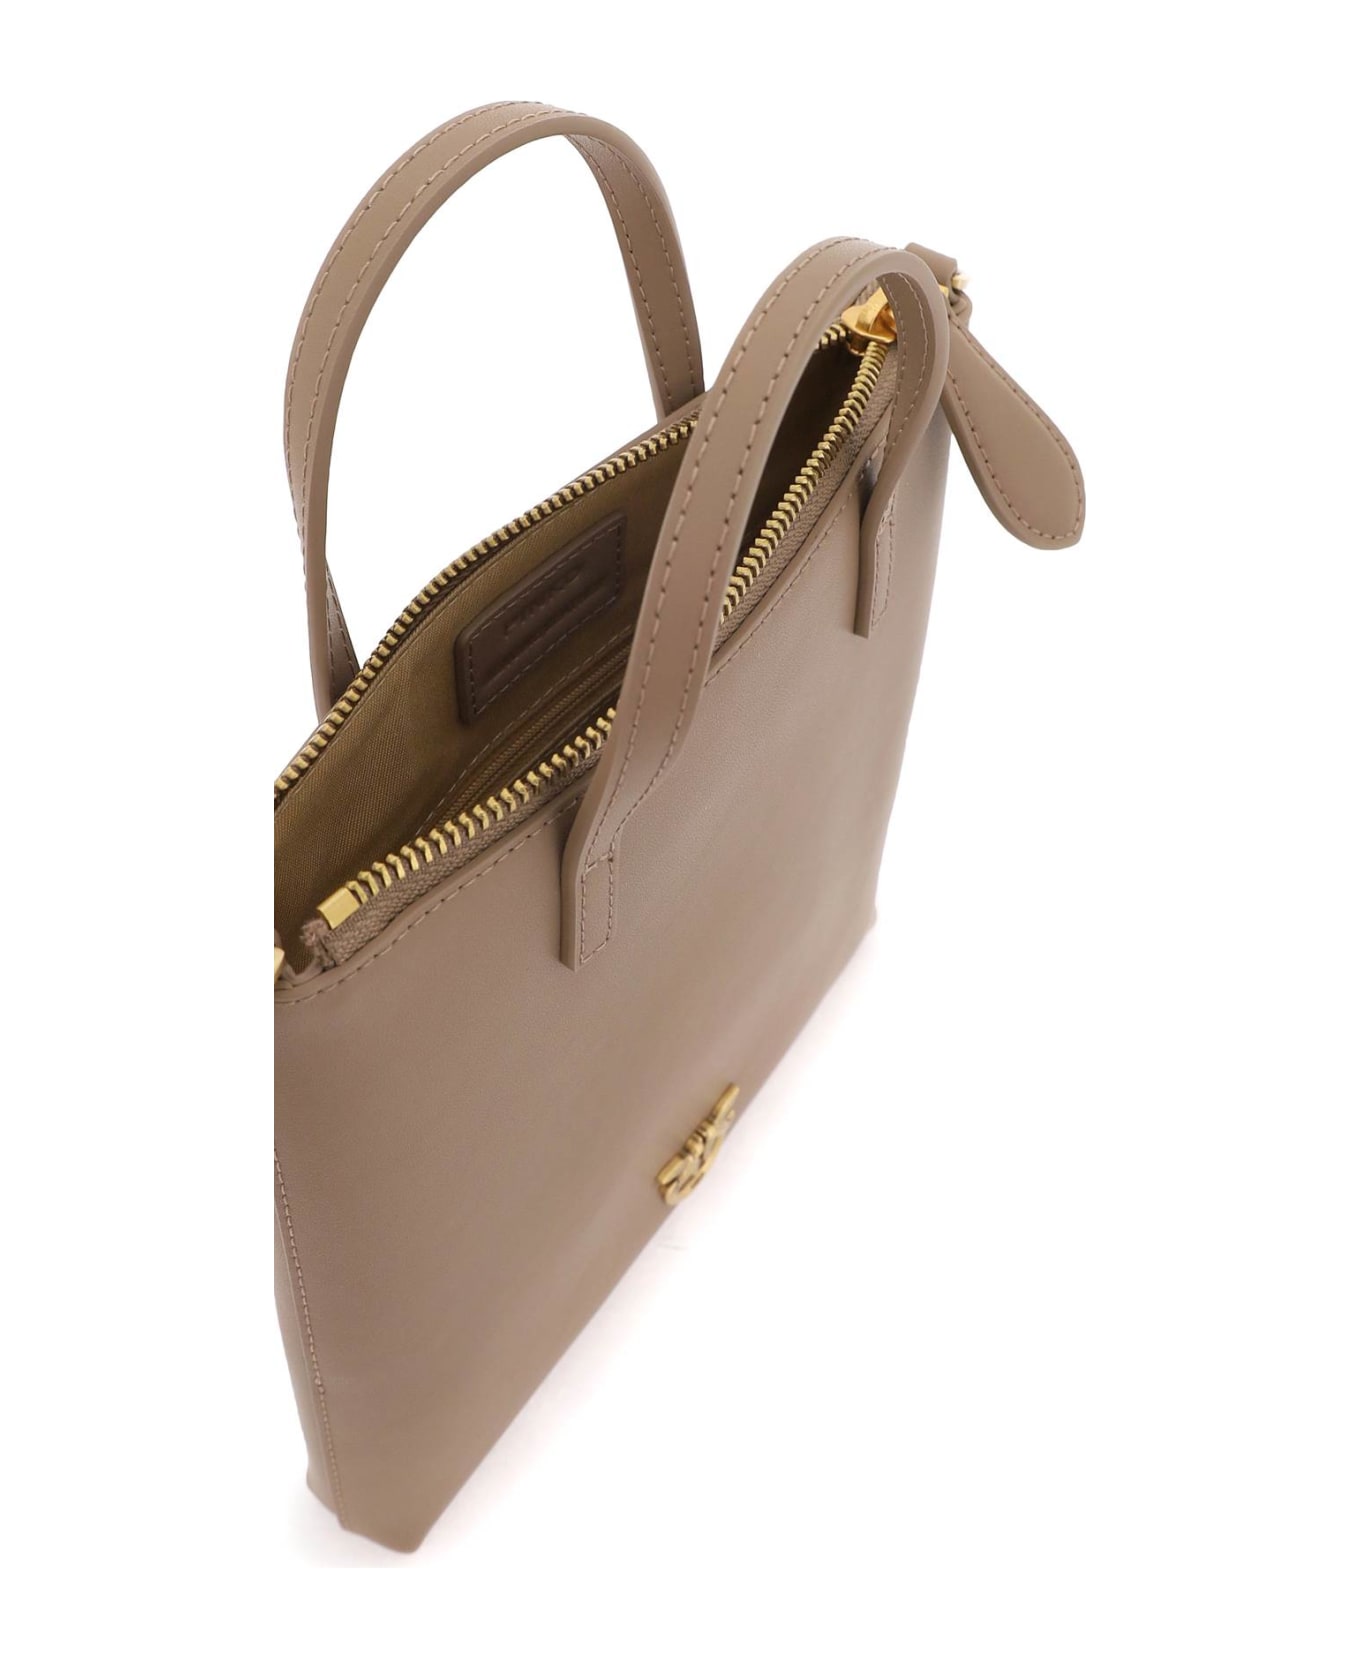 Pinko Leather Mini Tote Bag - BISCOTTO ZENZERO ANTIQUE GOLD (Brown)